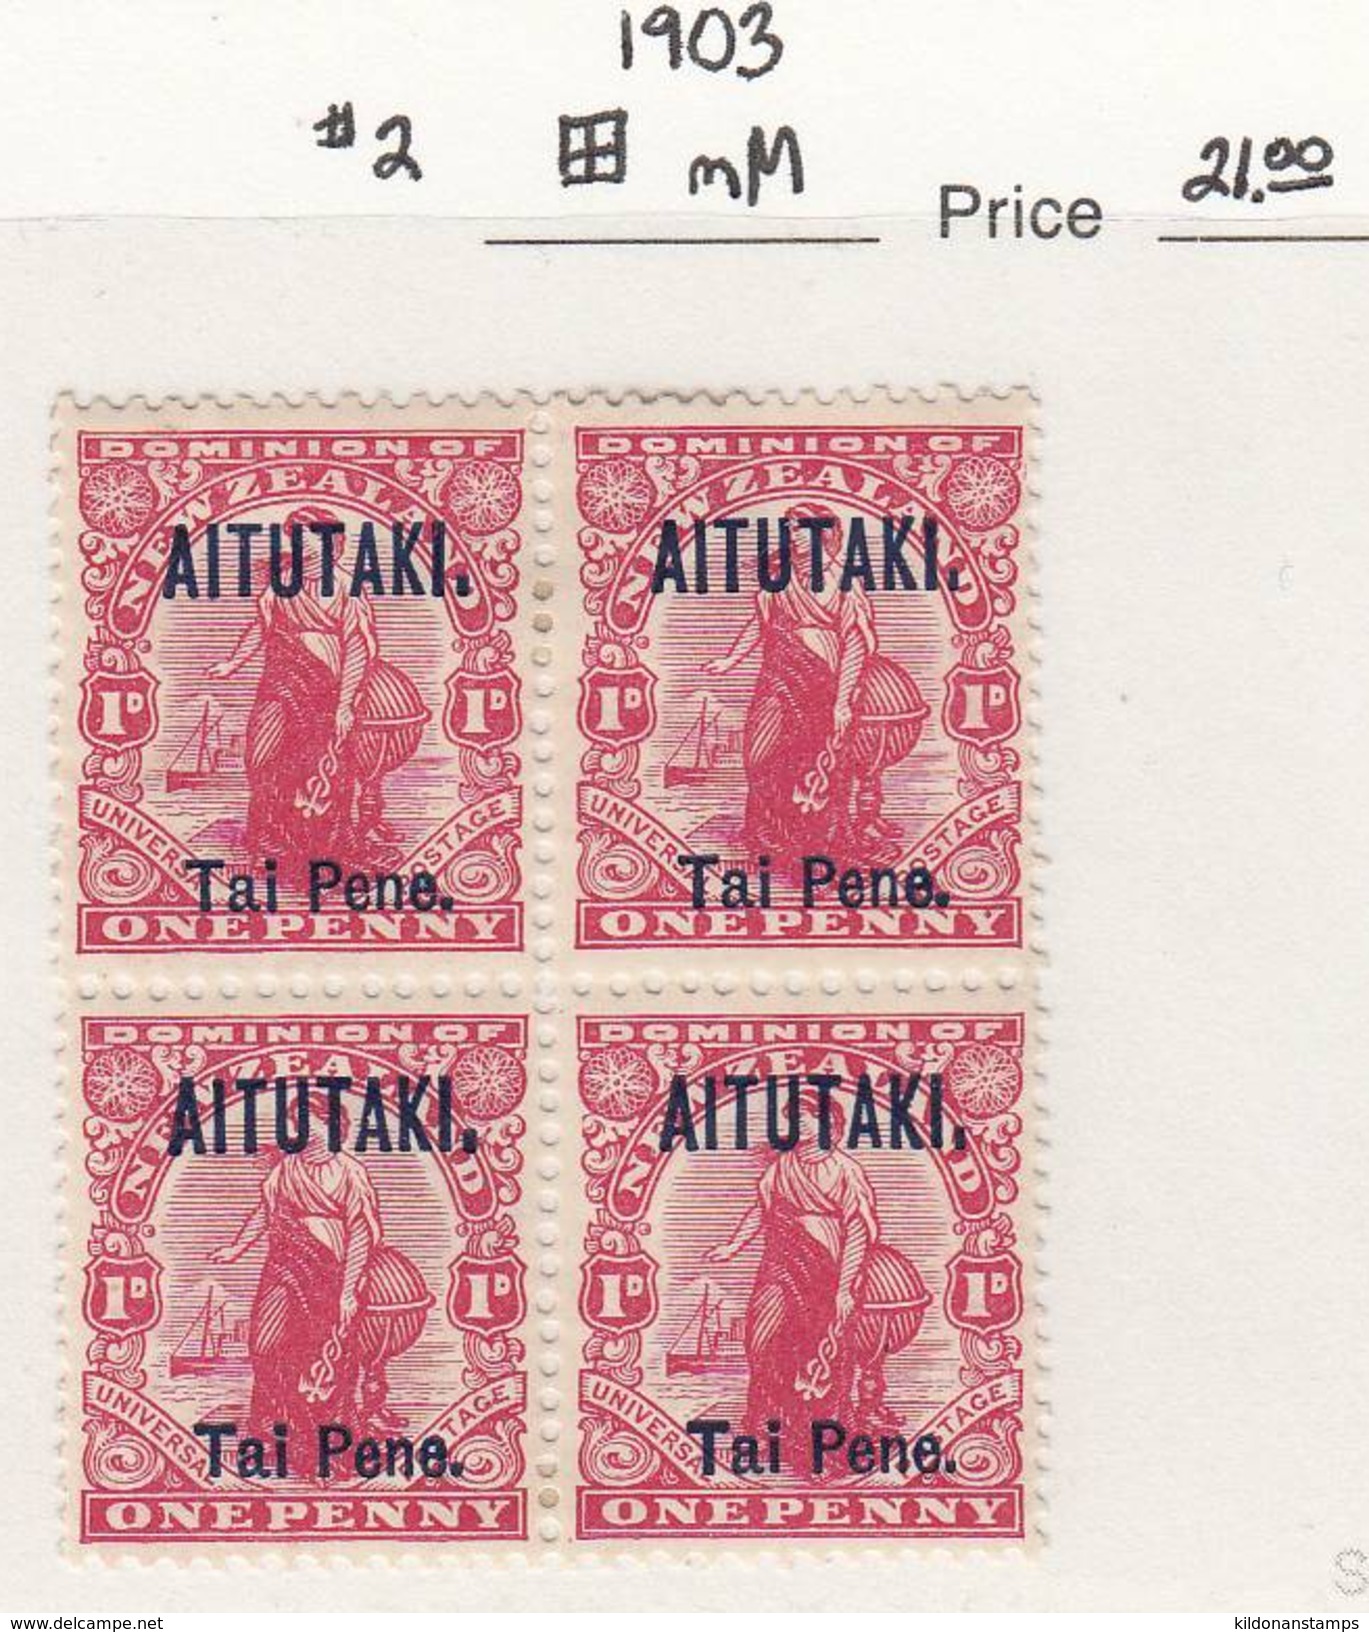 Aitutaki 1903 Mint Mounted, Block Of 4, Sc# 2, SG 2 - Aitutaki